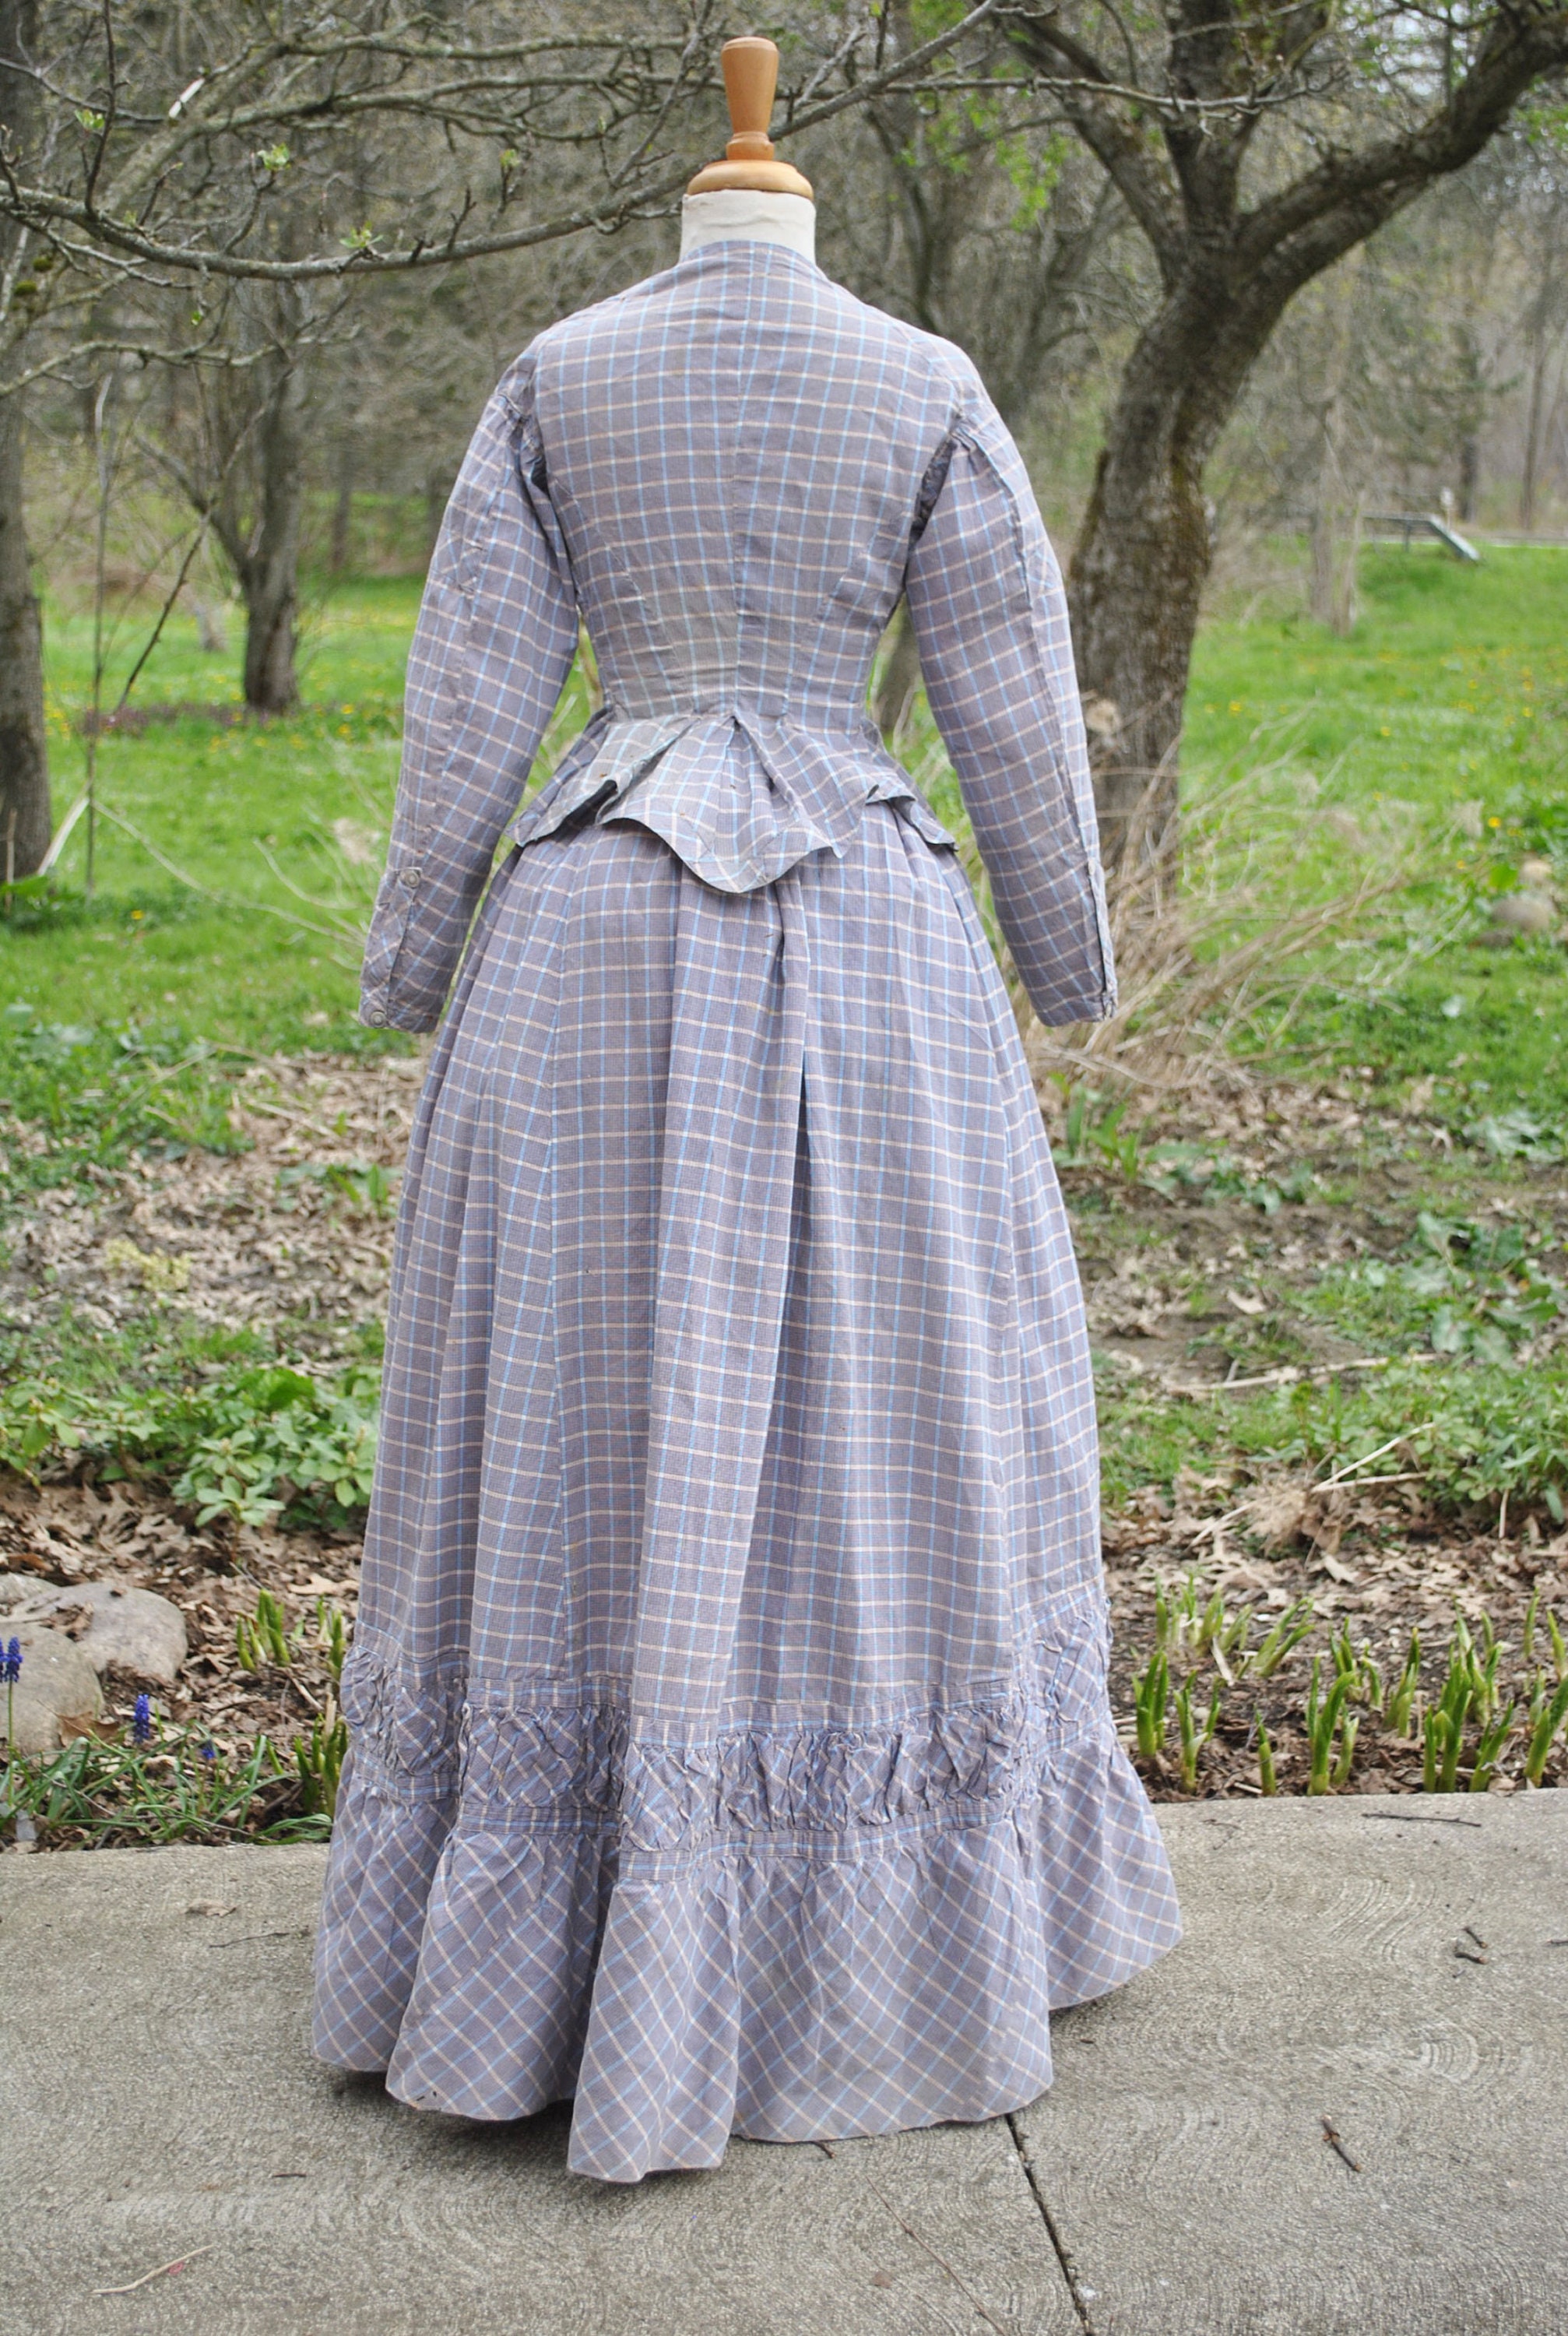 Antique Dress 1880 Plaid Cotton Bustle Dress 2 Piece - Etsy Australia